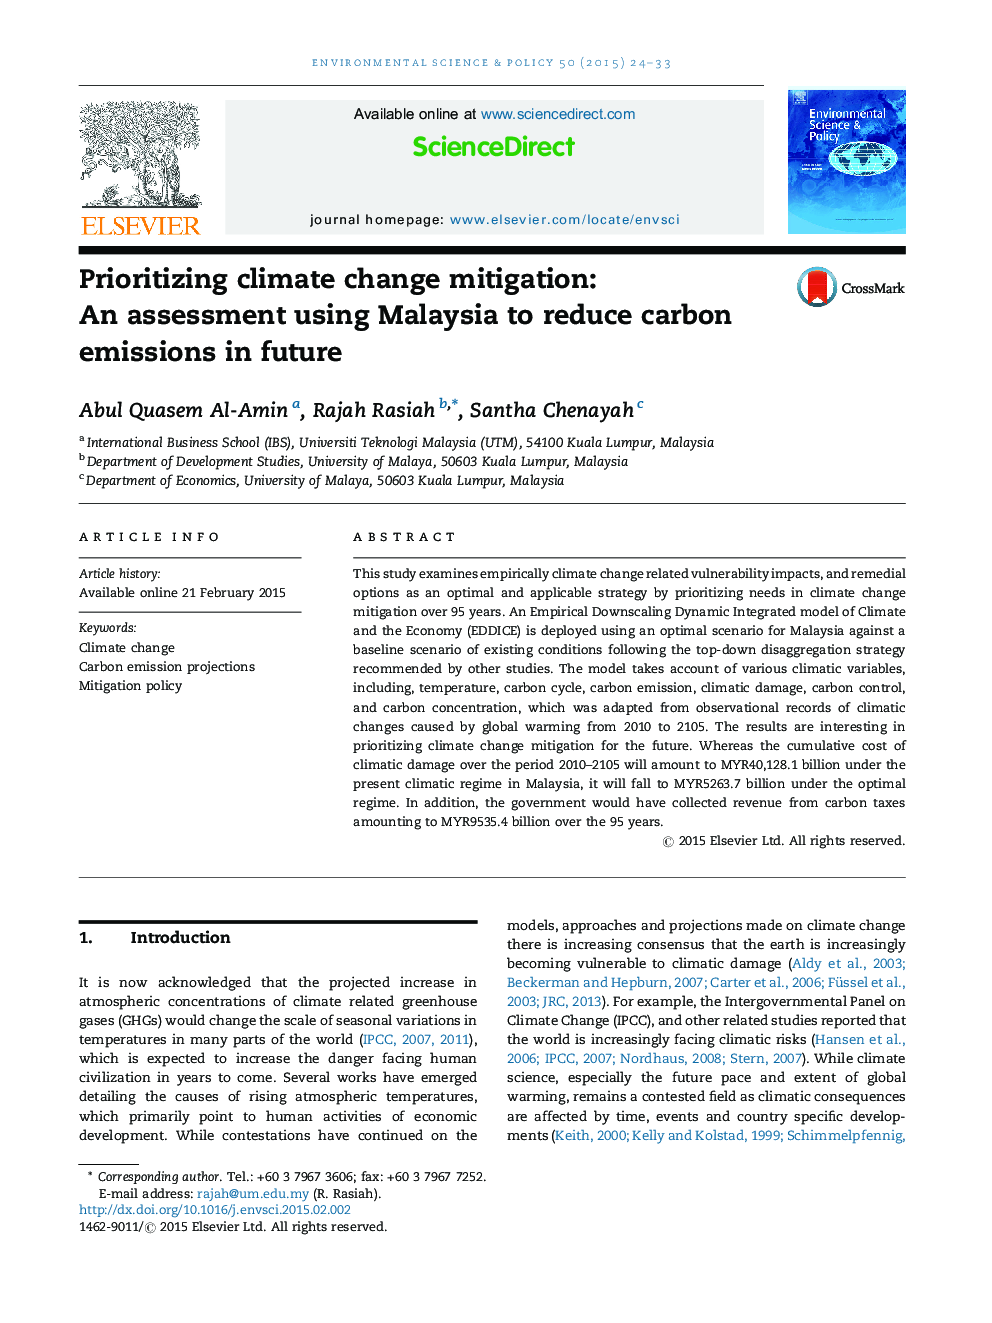 اولویت بندی تغییرات اقلیمی: ارزیابی با استفاده از مالزی برای کاهش انتشار کربن در آینده 